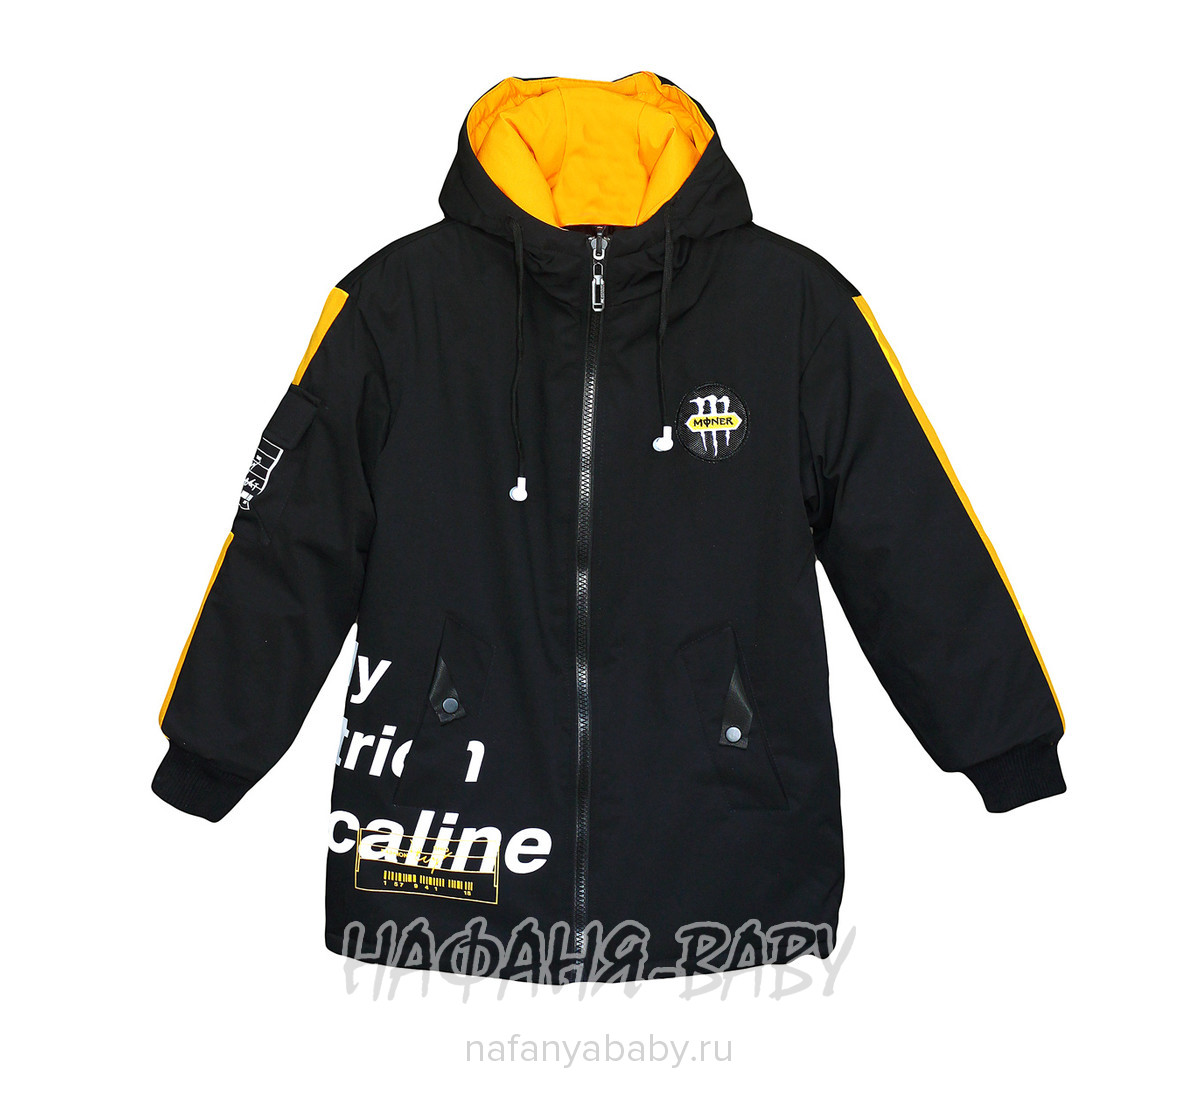 Подростковая демисезонная куртка Z.Y.G.Z. арт: 1072, 10-15 лет, цвет черный с желтым, оптом Китай (Пекин)